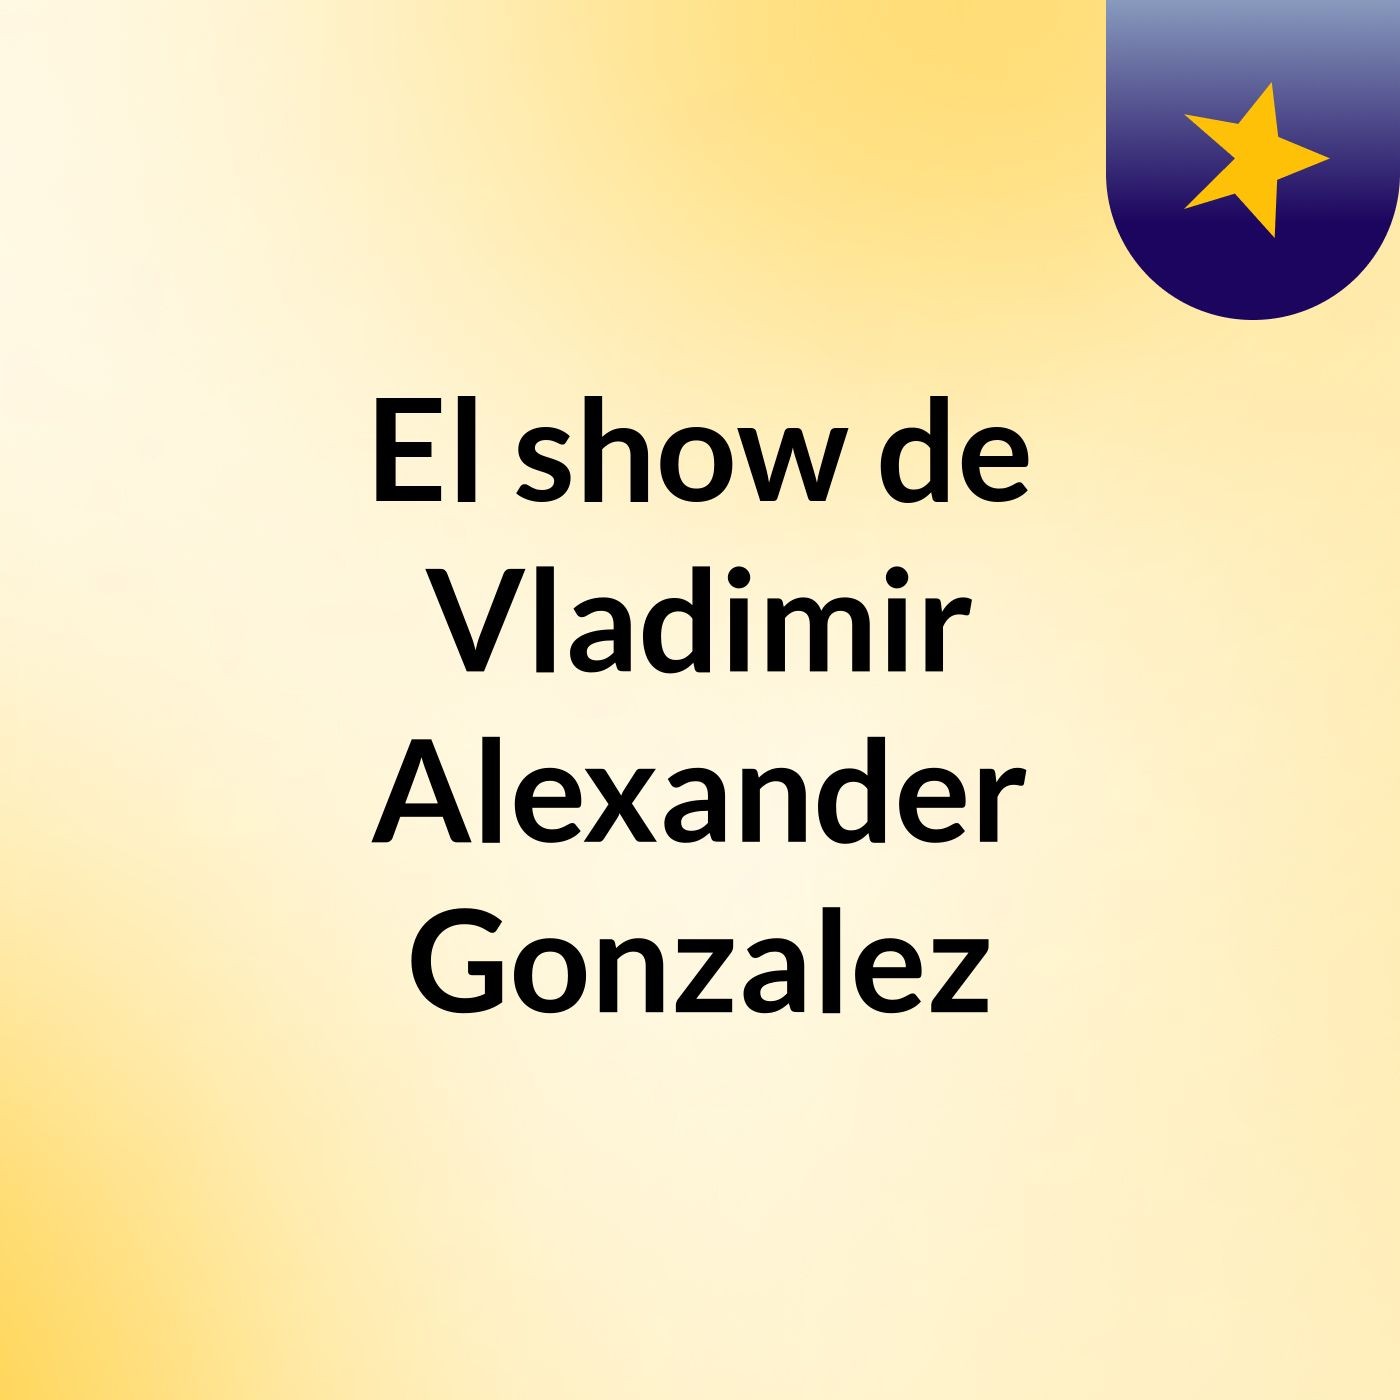 El show de Vladimir Alexander Gonzalez